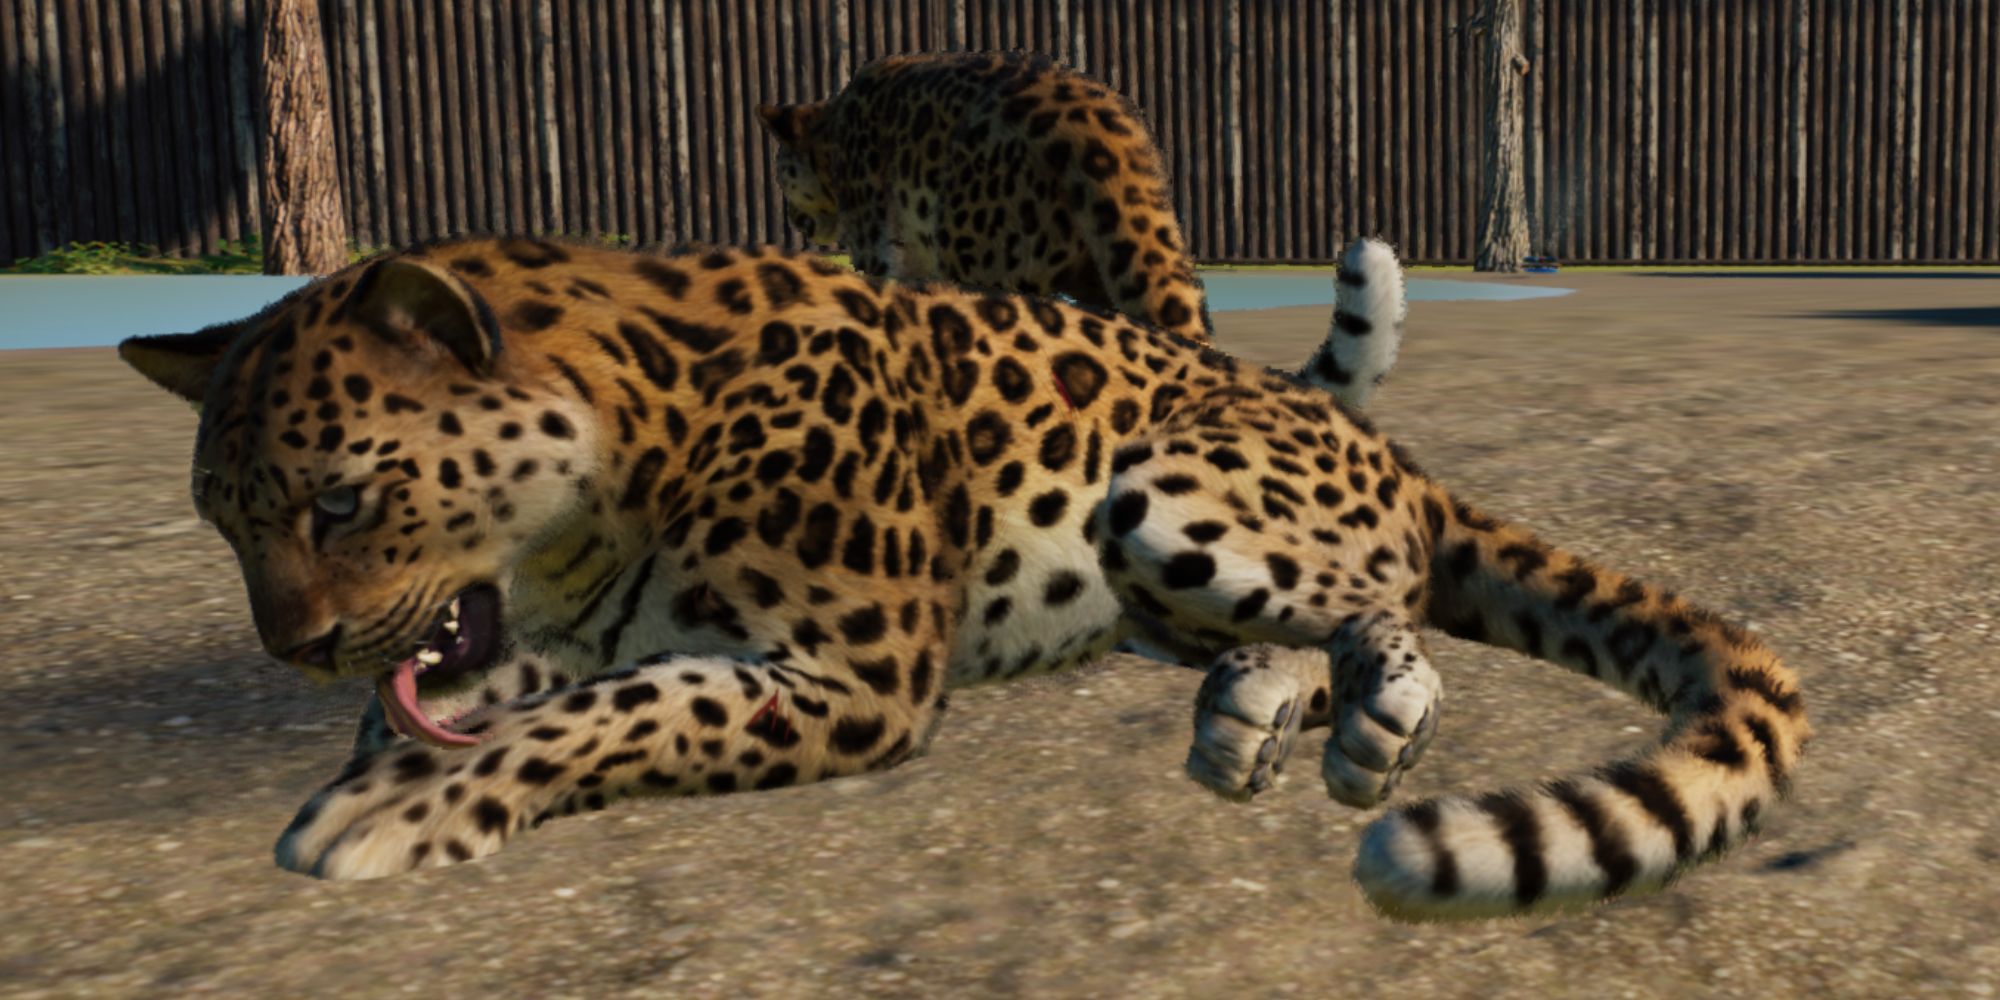 Planet Zoo Conservation Amur leopards